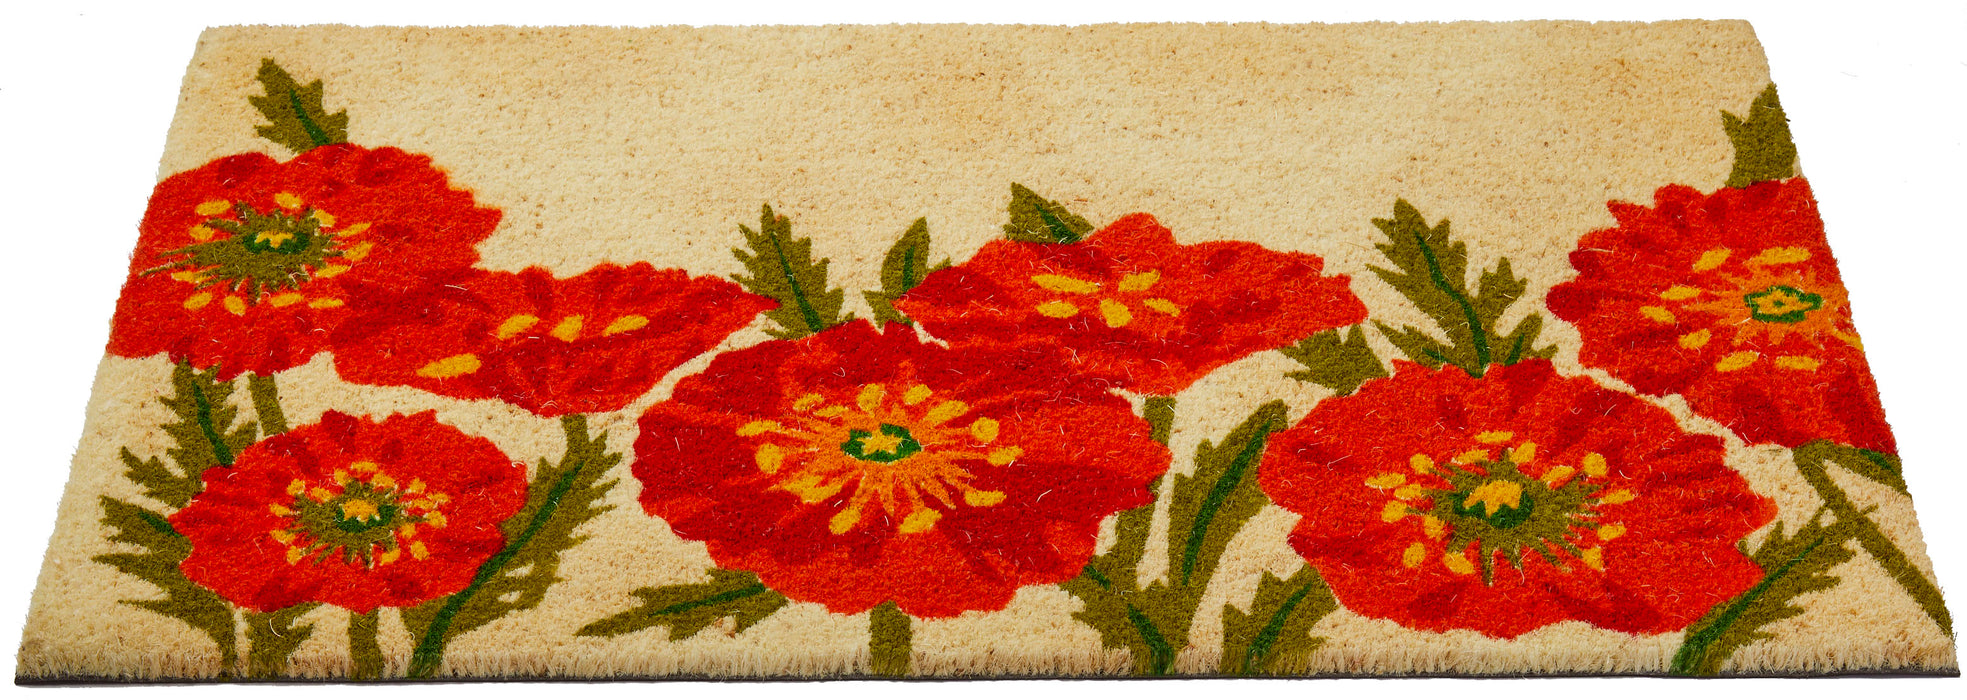 Poppies Doormat